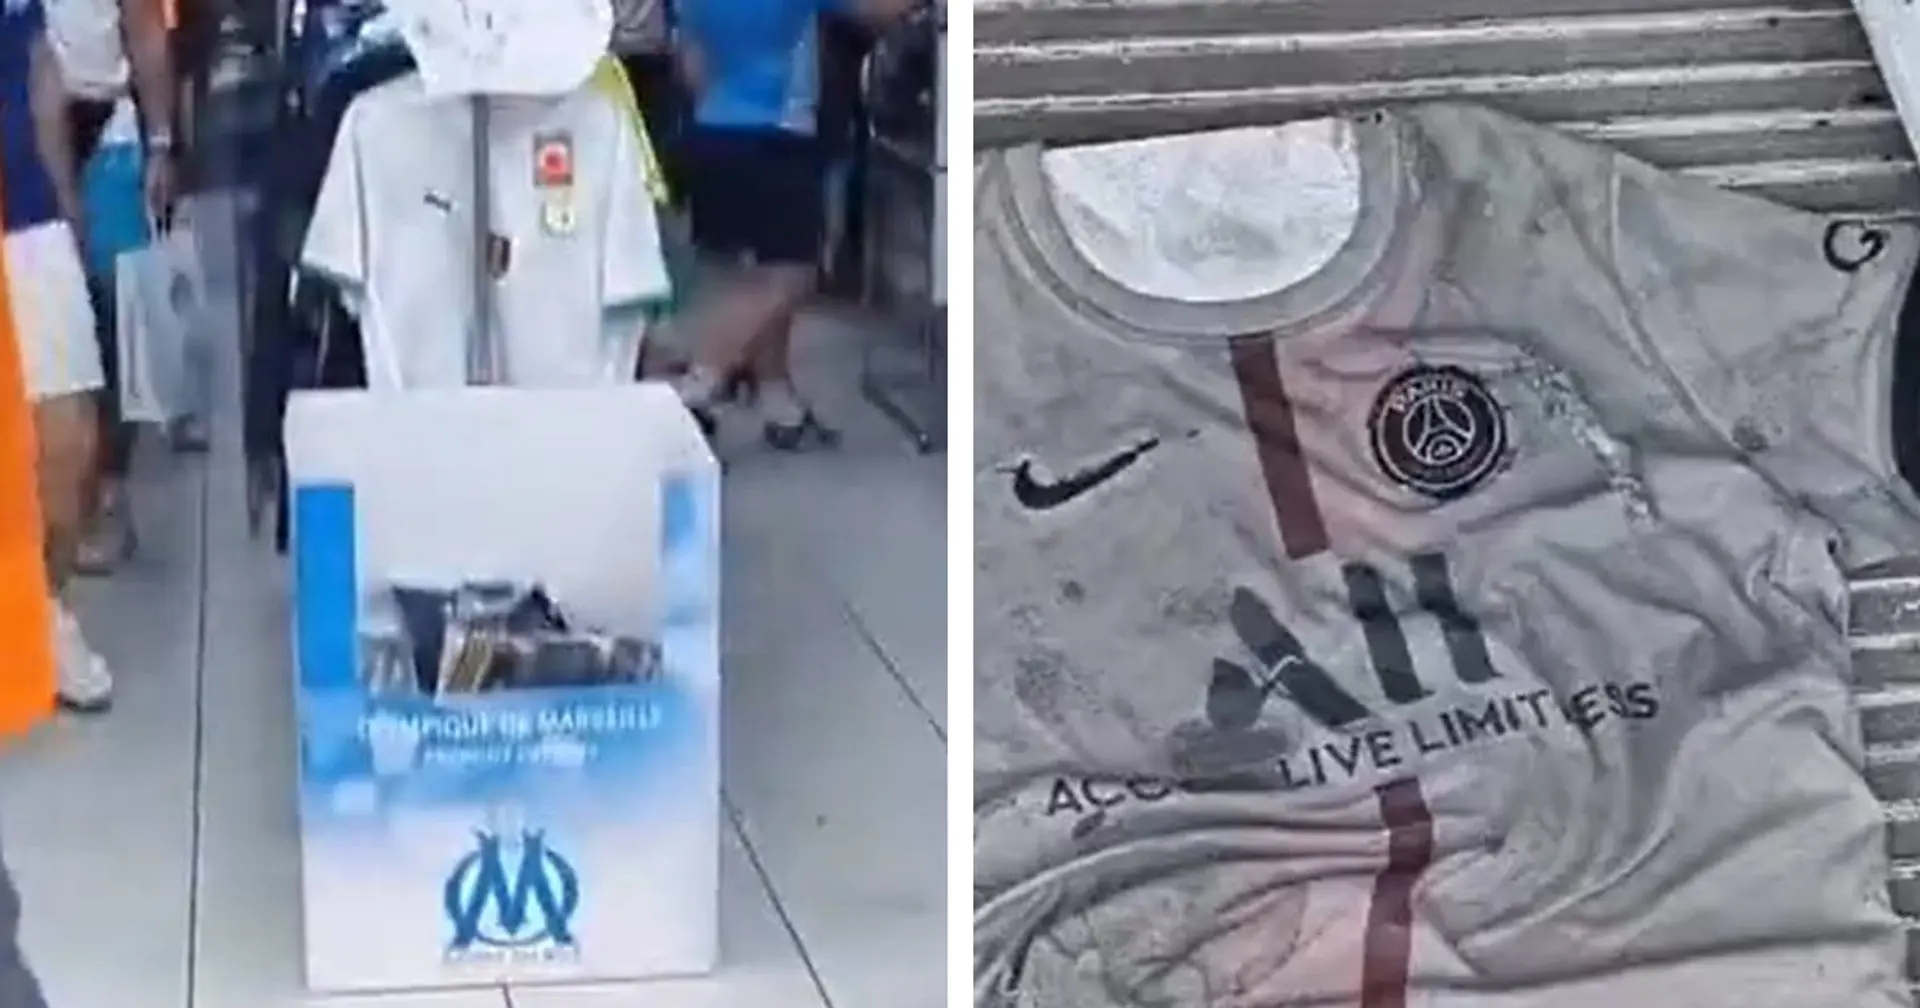 Aperçu: un magasin pour supporters de l'OM utilise un maillot du PSG comme paillasson - 2 autres clubs malmenés